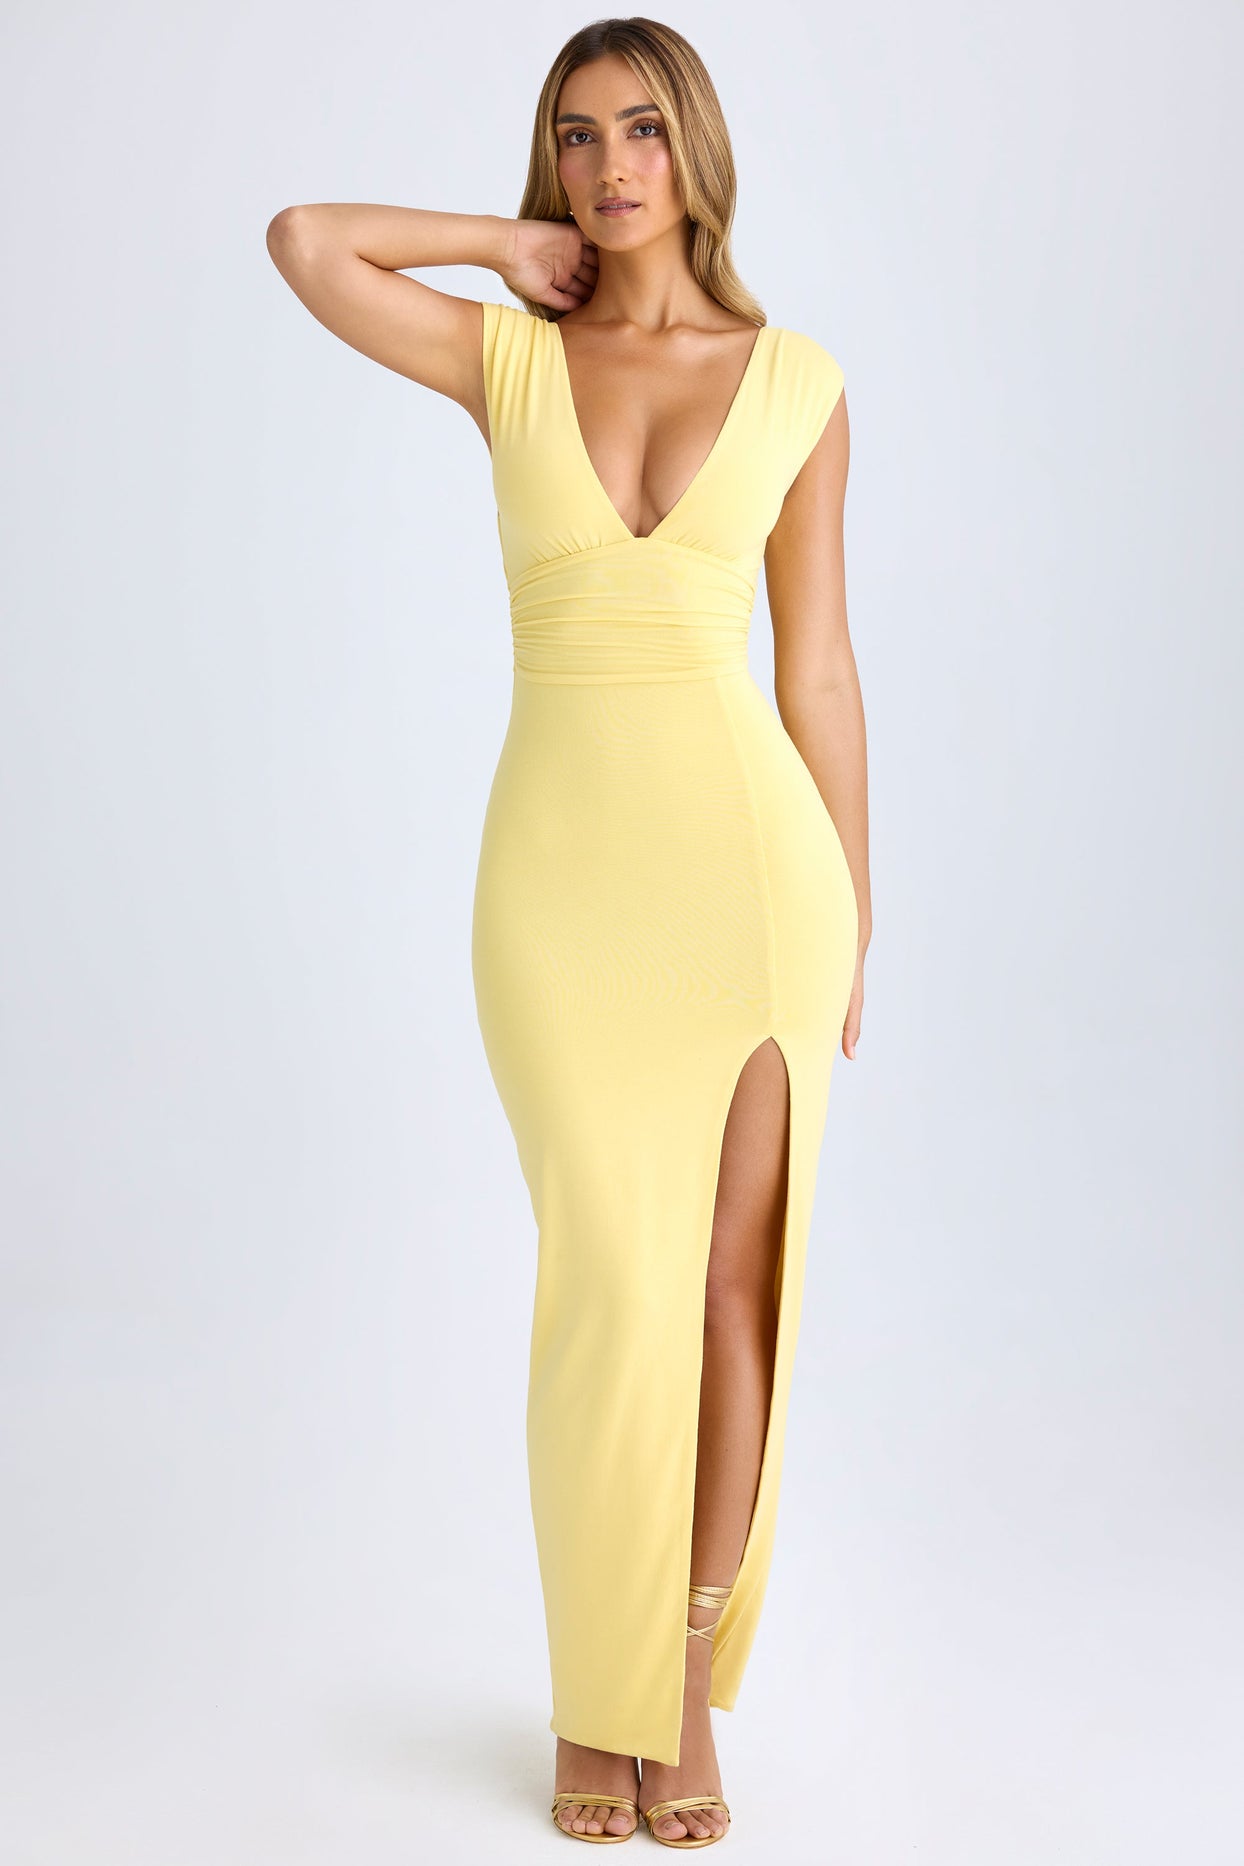 Modal High-Split Plunge-Neck Maxi Dress in Lemon Sherbet